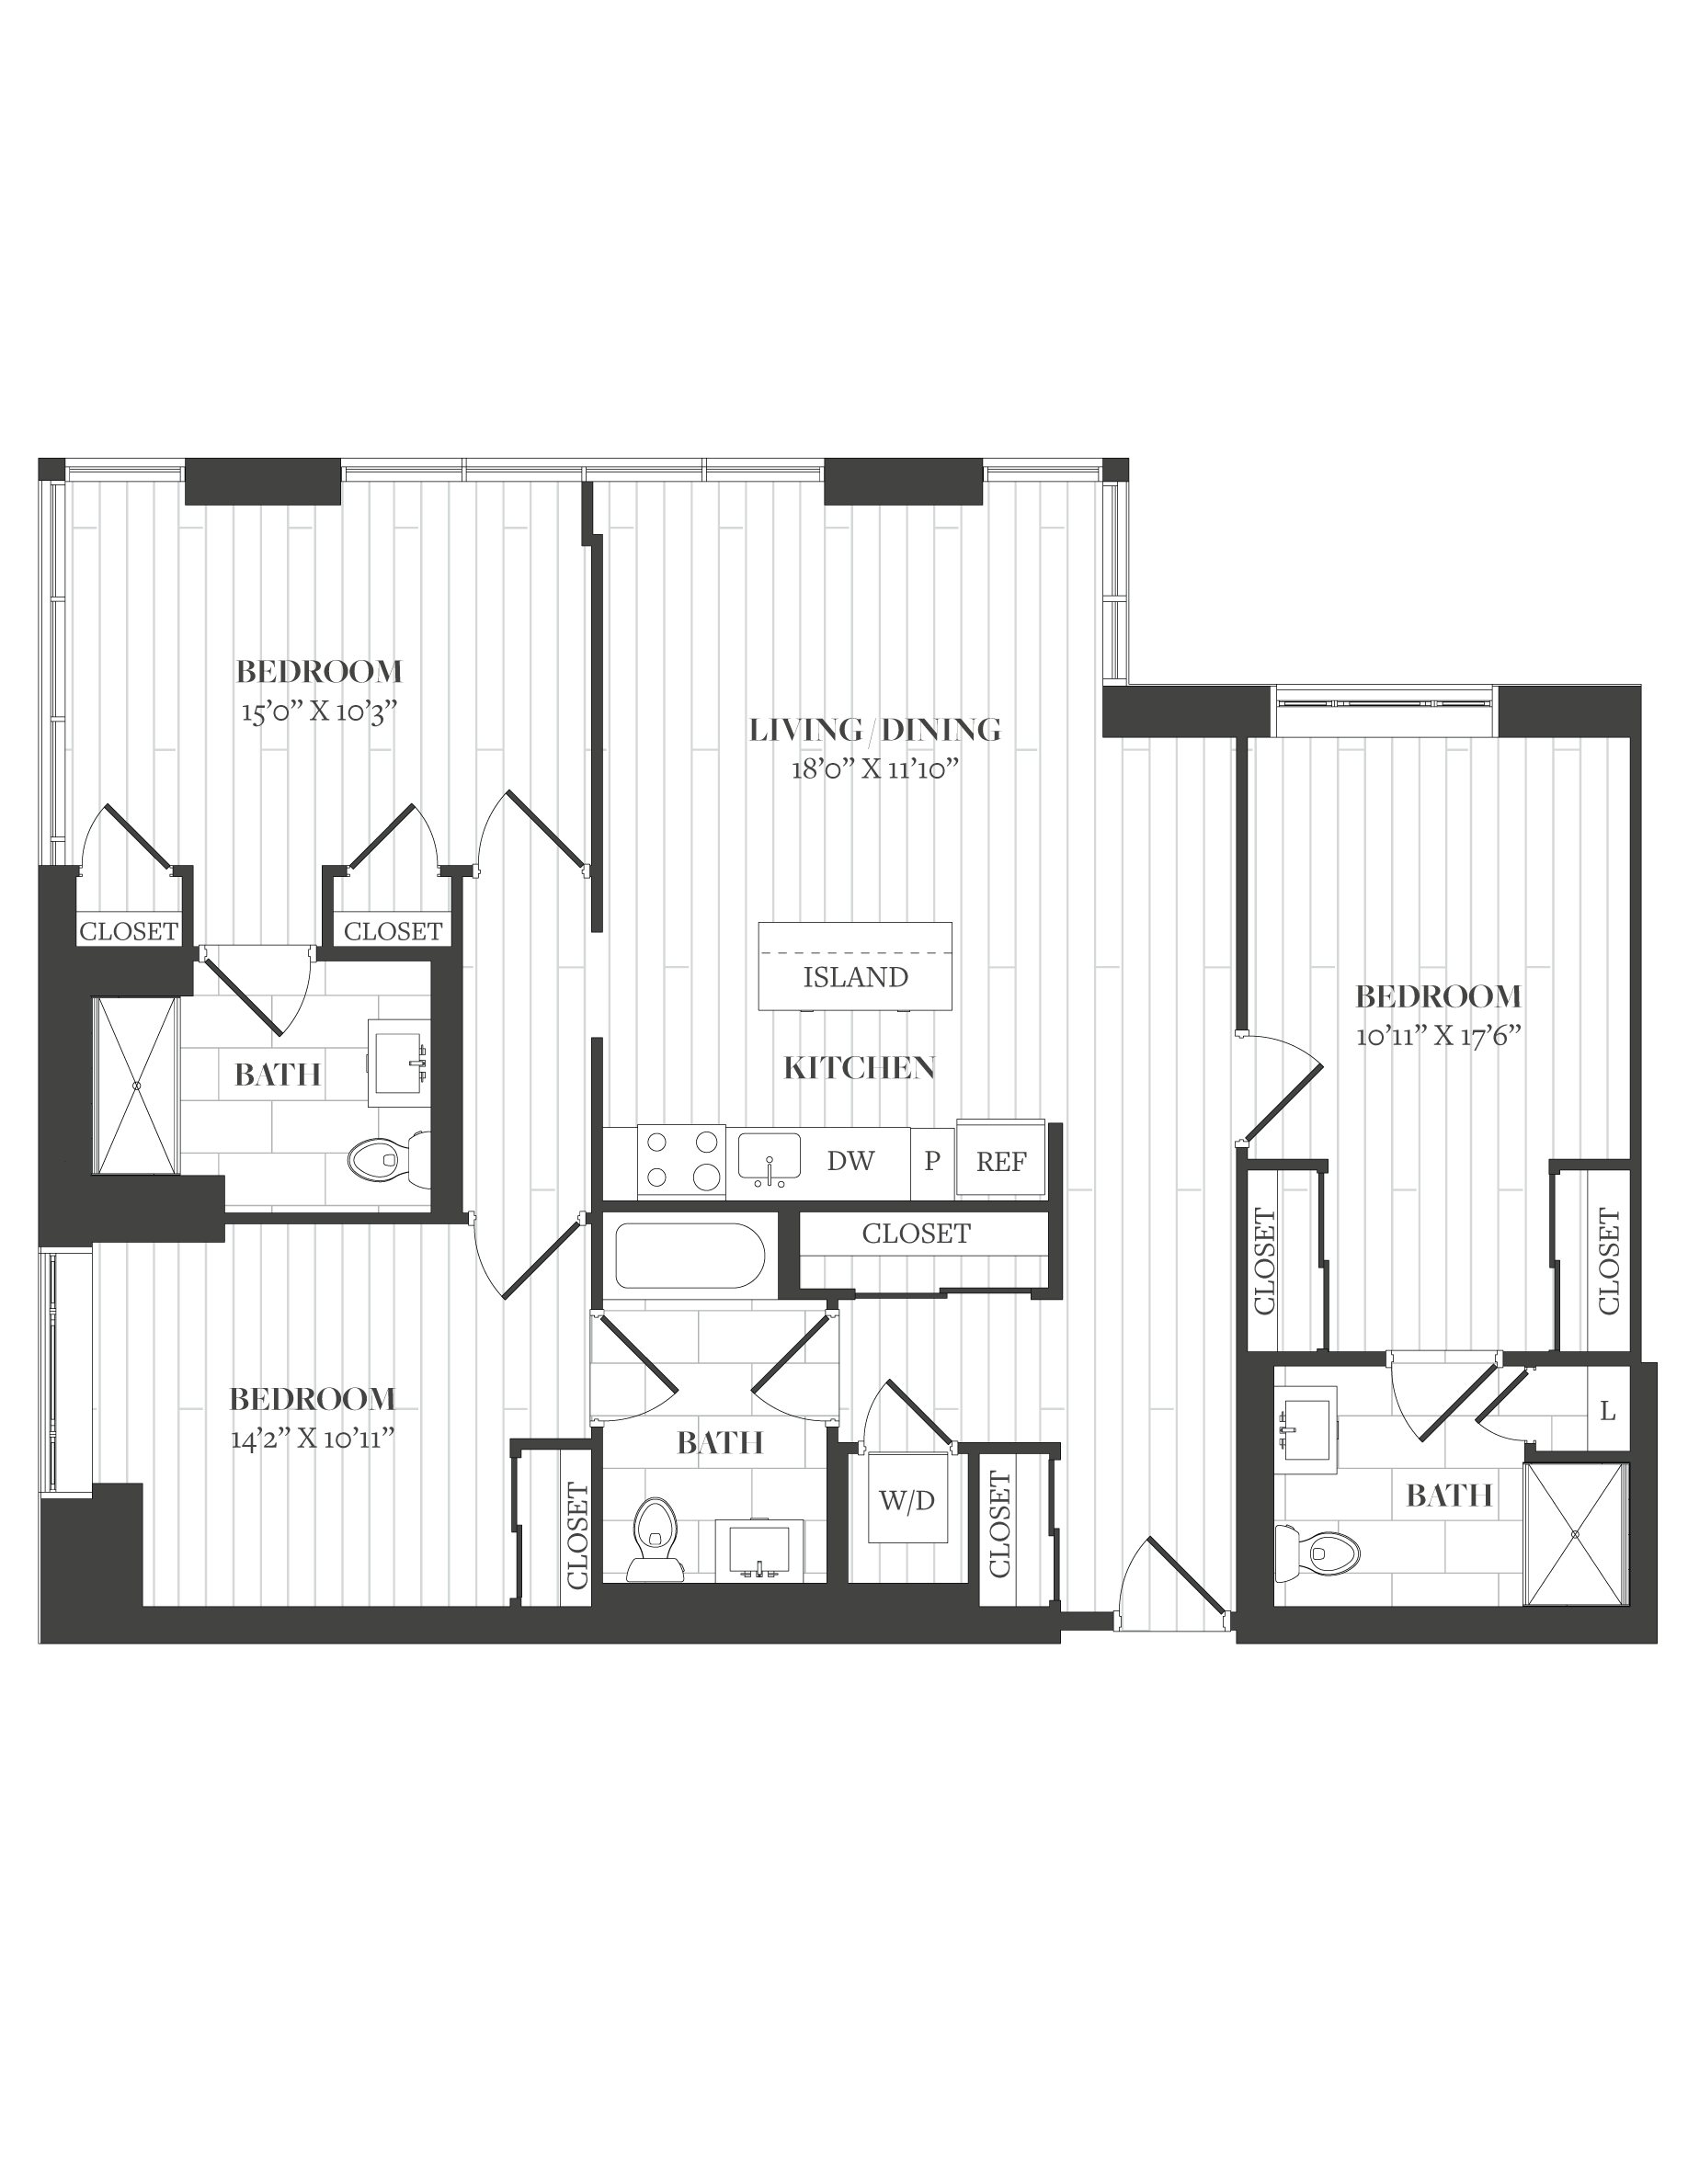 Floorplan image of unit 1306